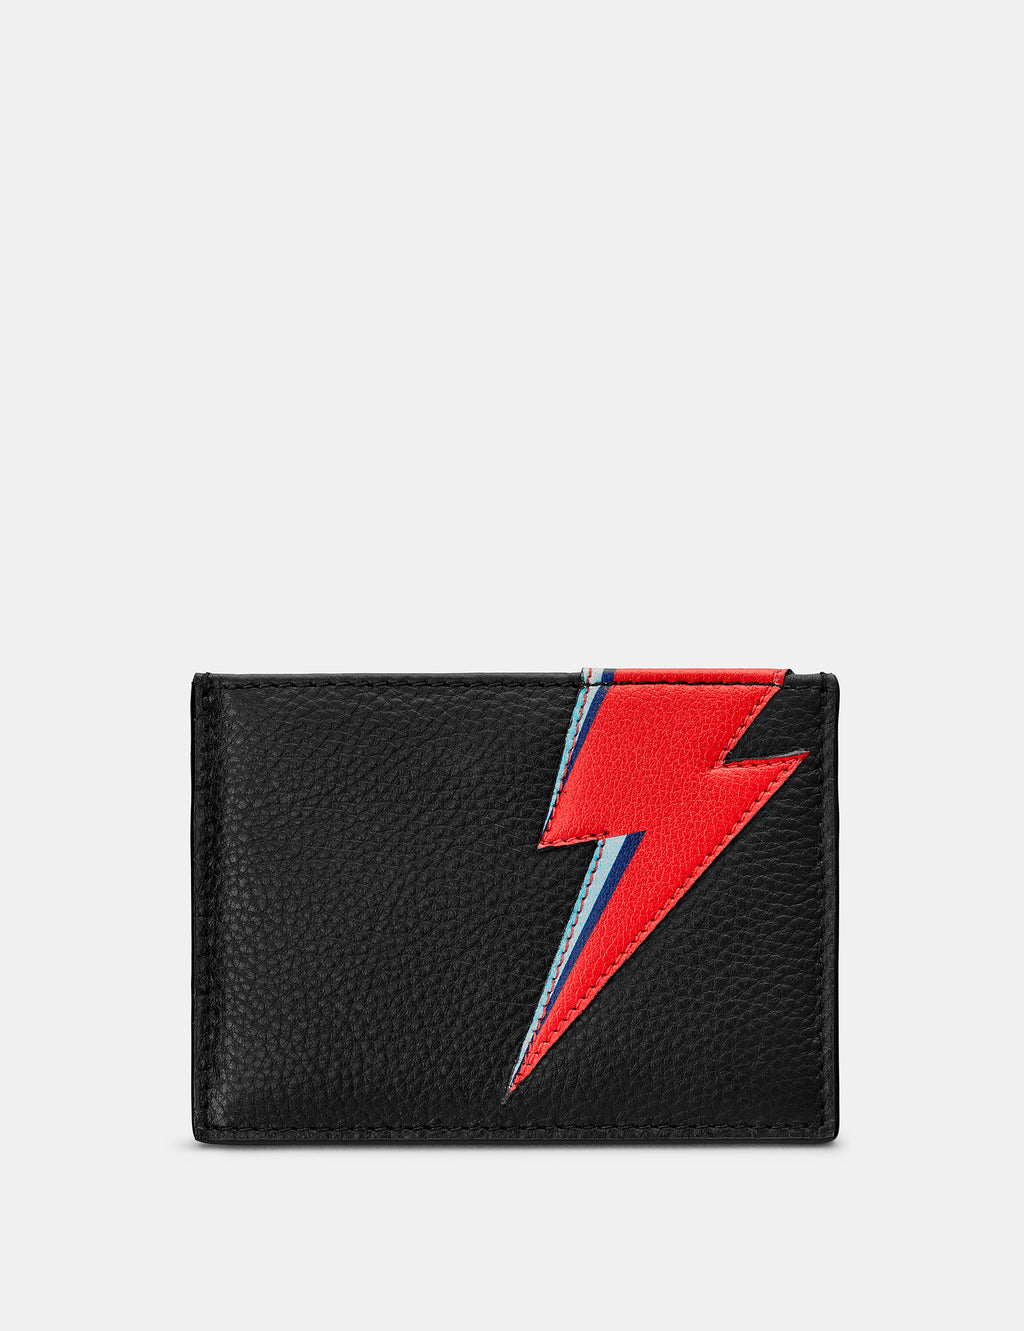 Lightning Bolt Black Leather Card Holder